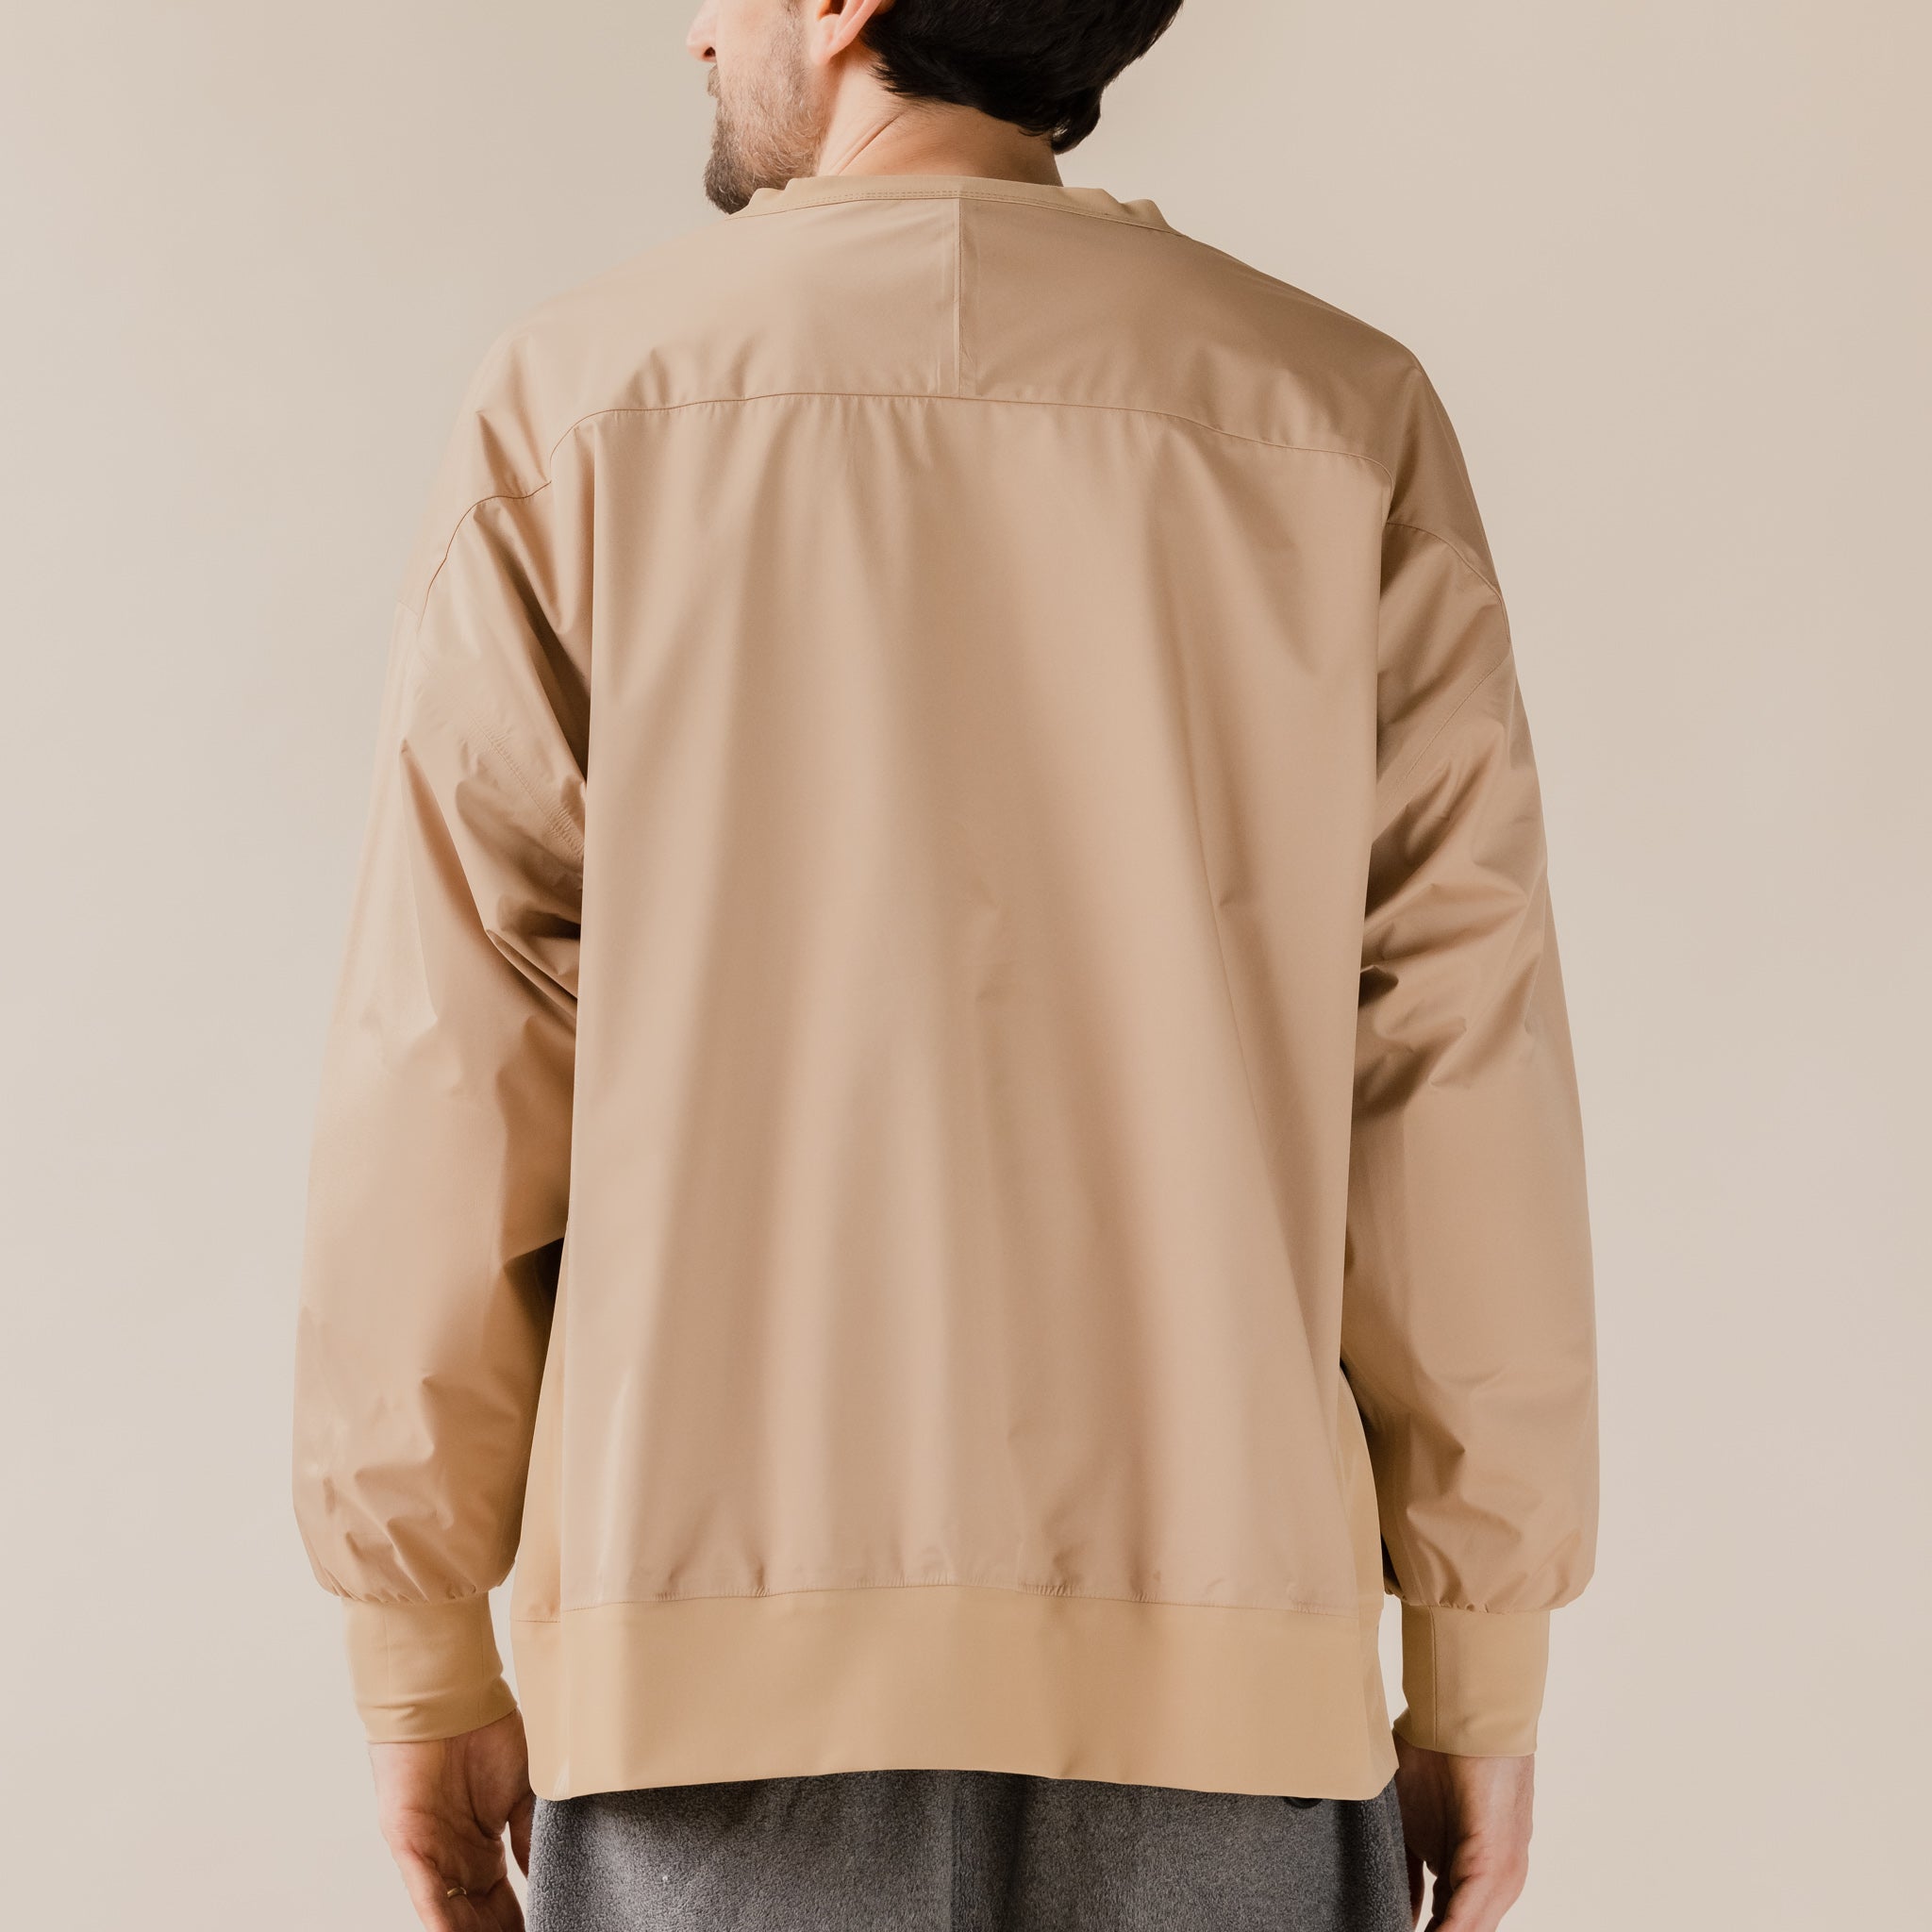 CMF Comfy Outdoor Garment - RW Crew 3 Layer Sweatshirt - Beige UK Stockist Waterproof Best Price